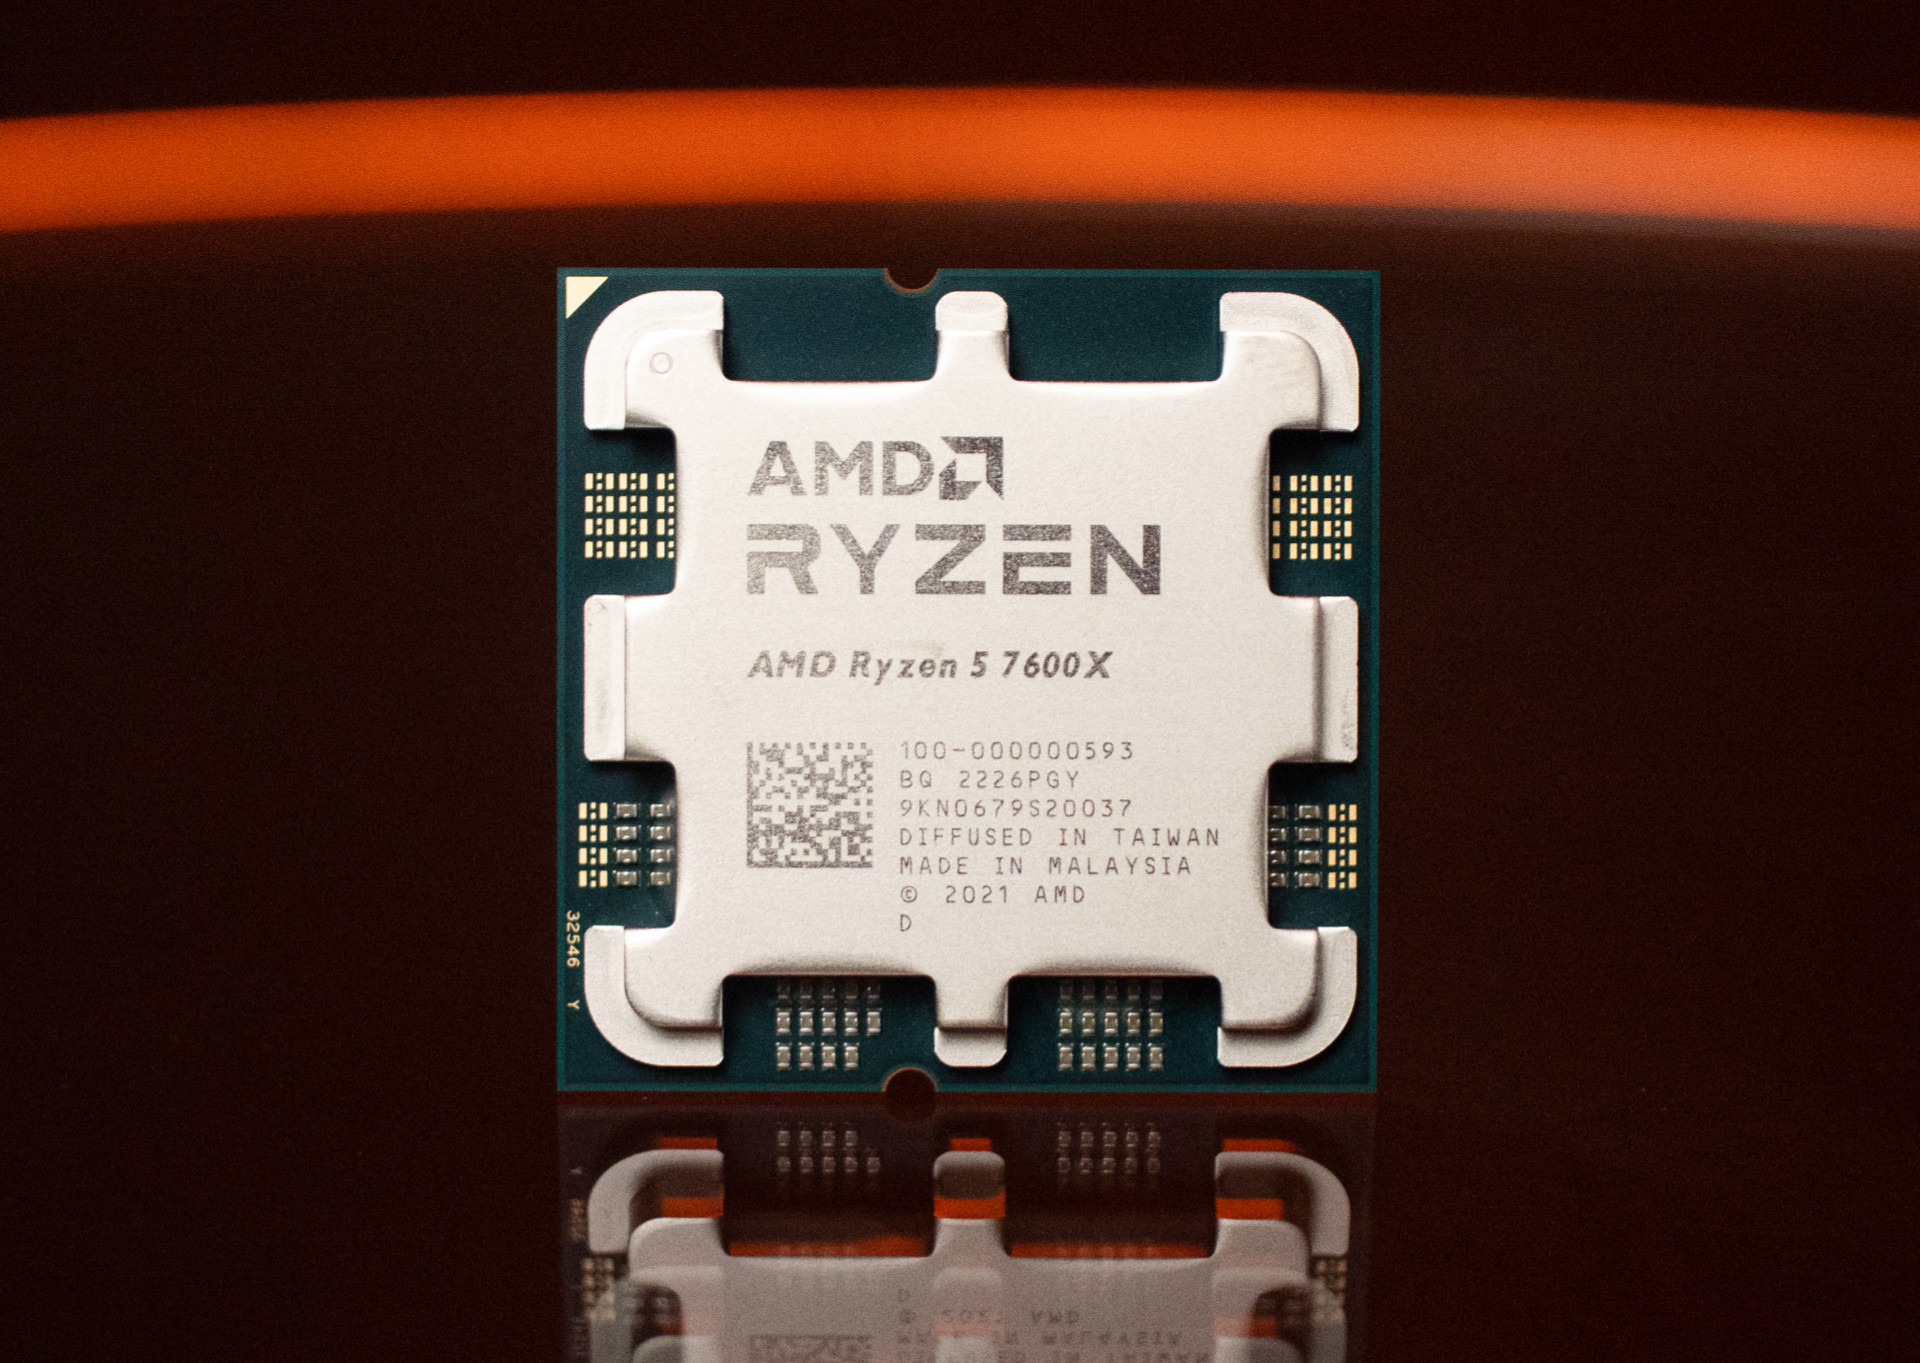 Amd ryzen 5 7600x vs. AMD 7600x. AMD 5 7600. R5 7600x. AMD Ryzen 5 7600x am5, 6 x 4700 МГЦ.